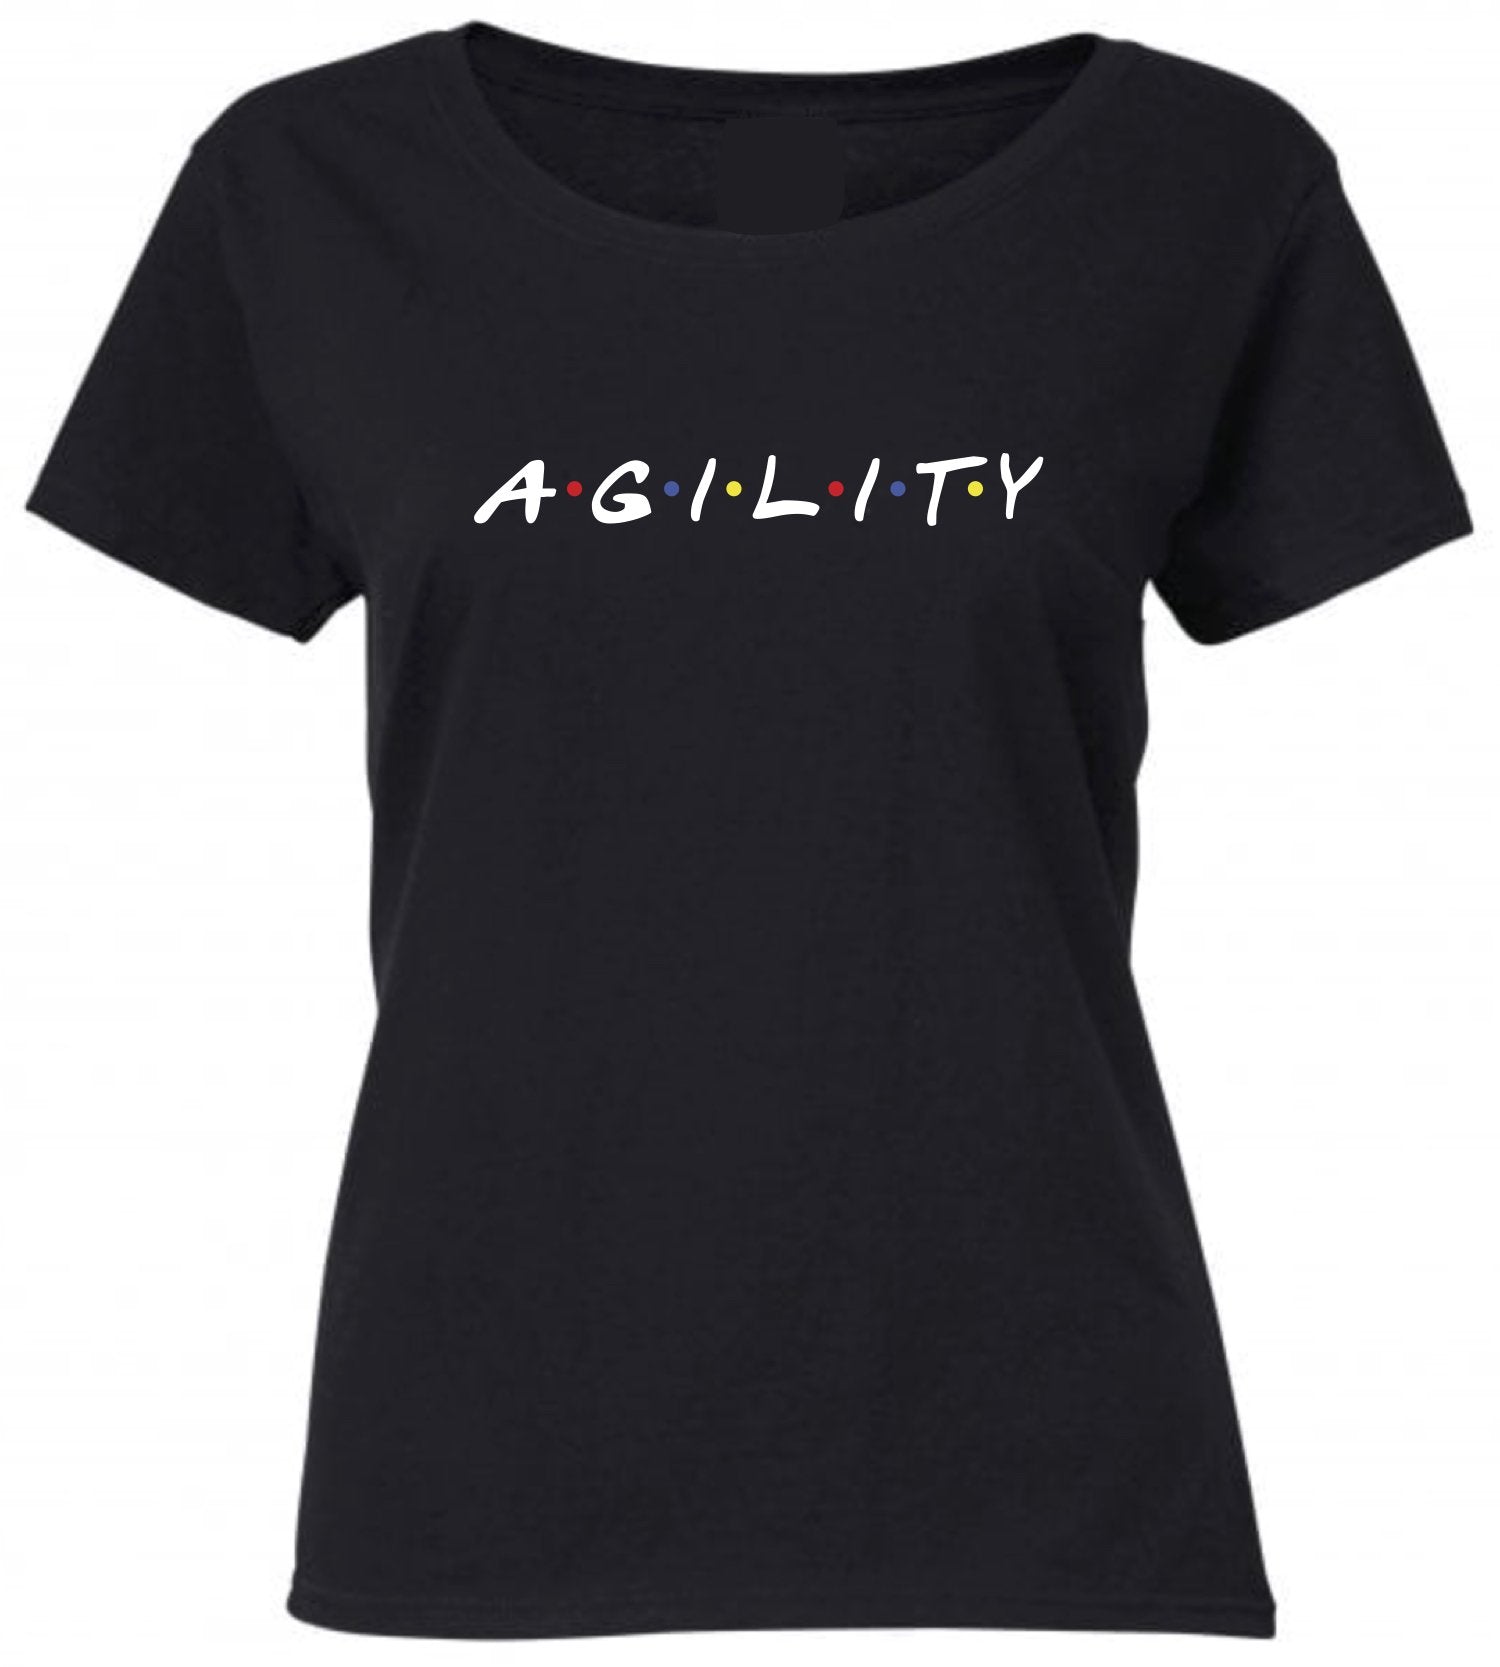 Agility Women's T-shirt - Pooch-